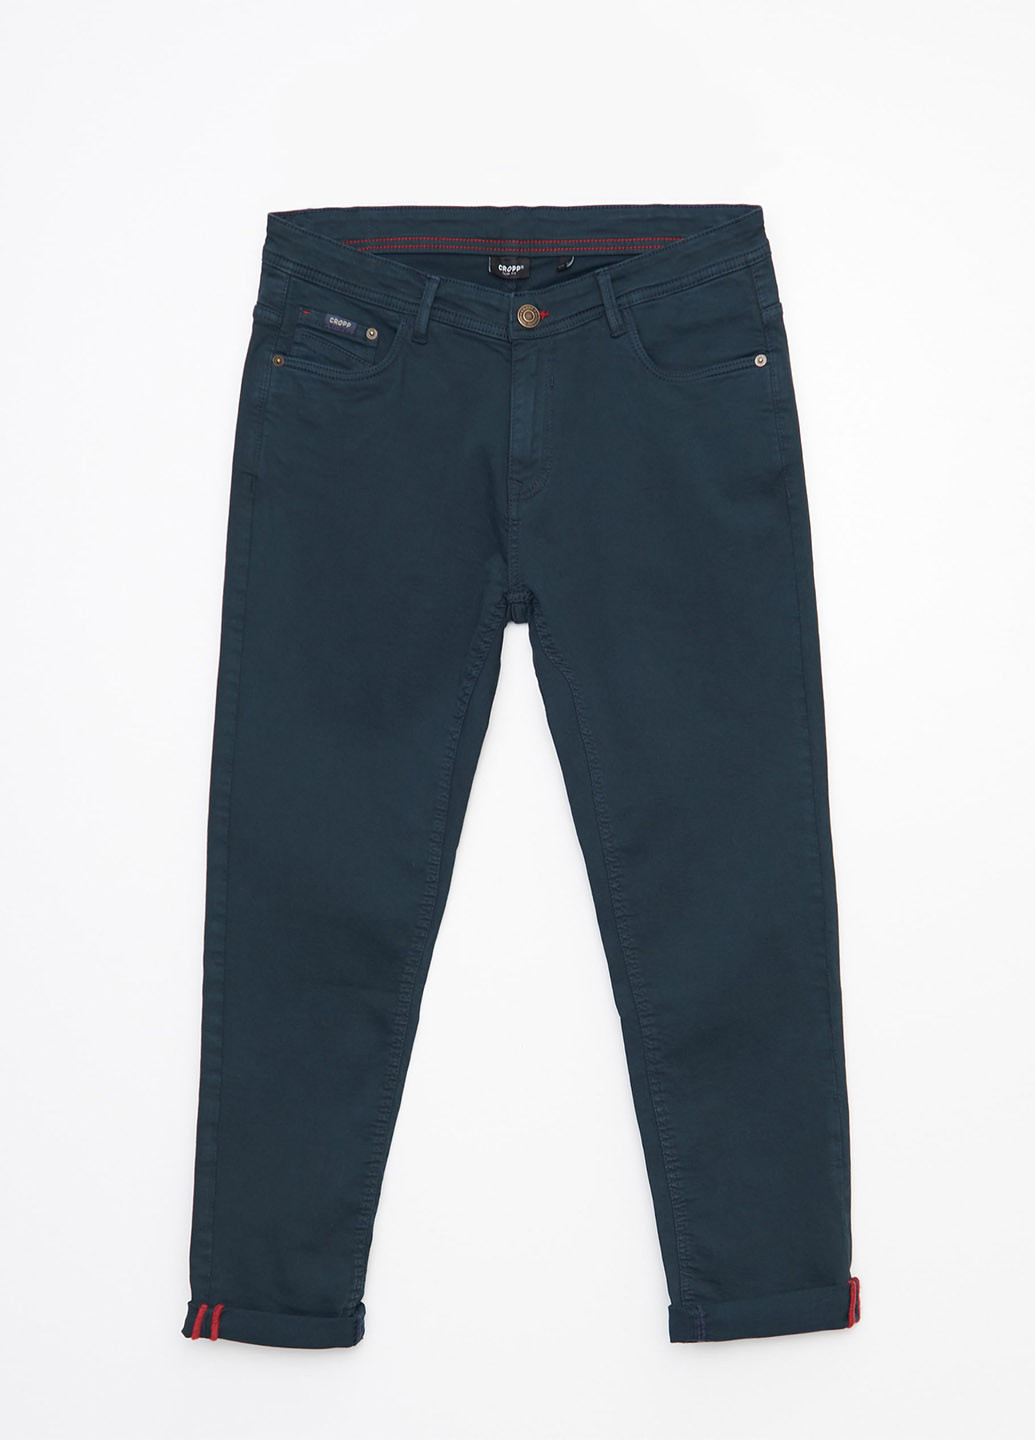 Темно-синие джинсовые демисезонные чиносы брюки Cropp